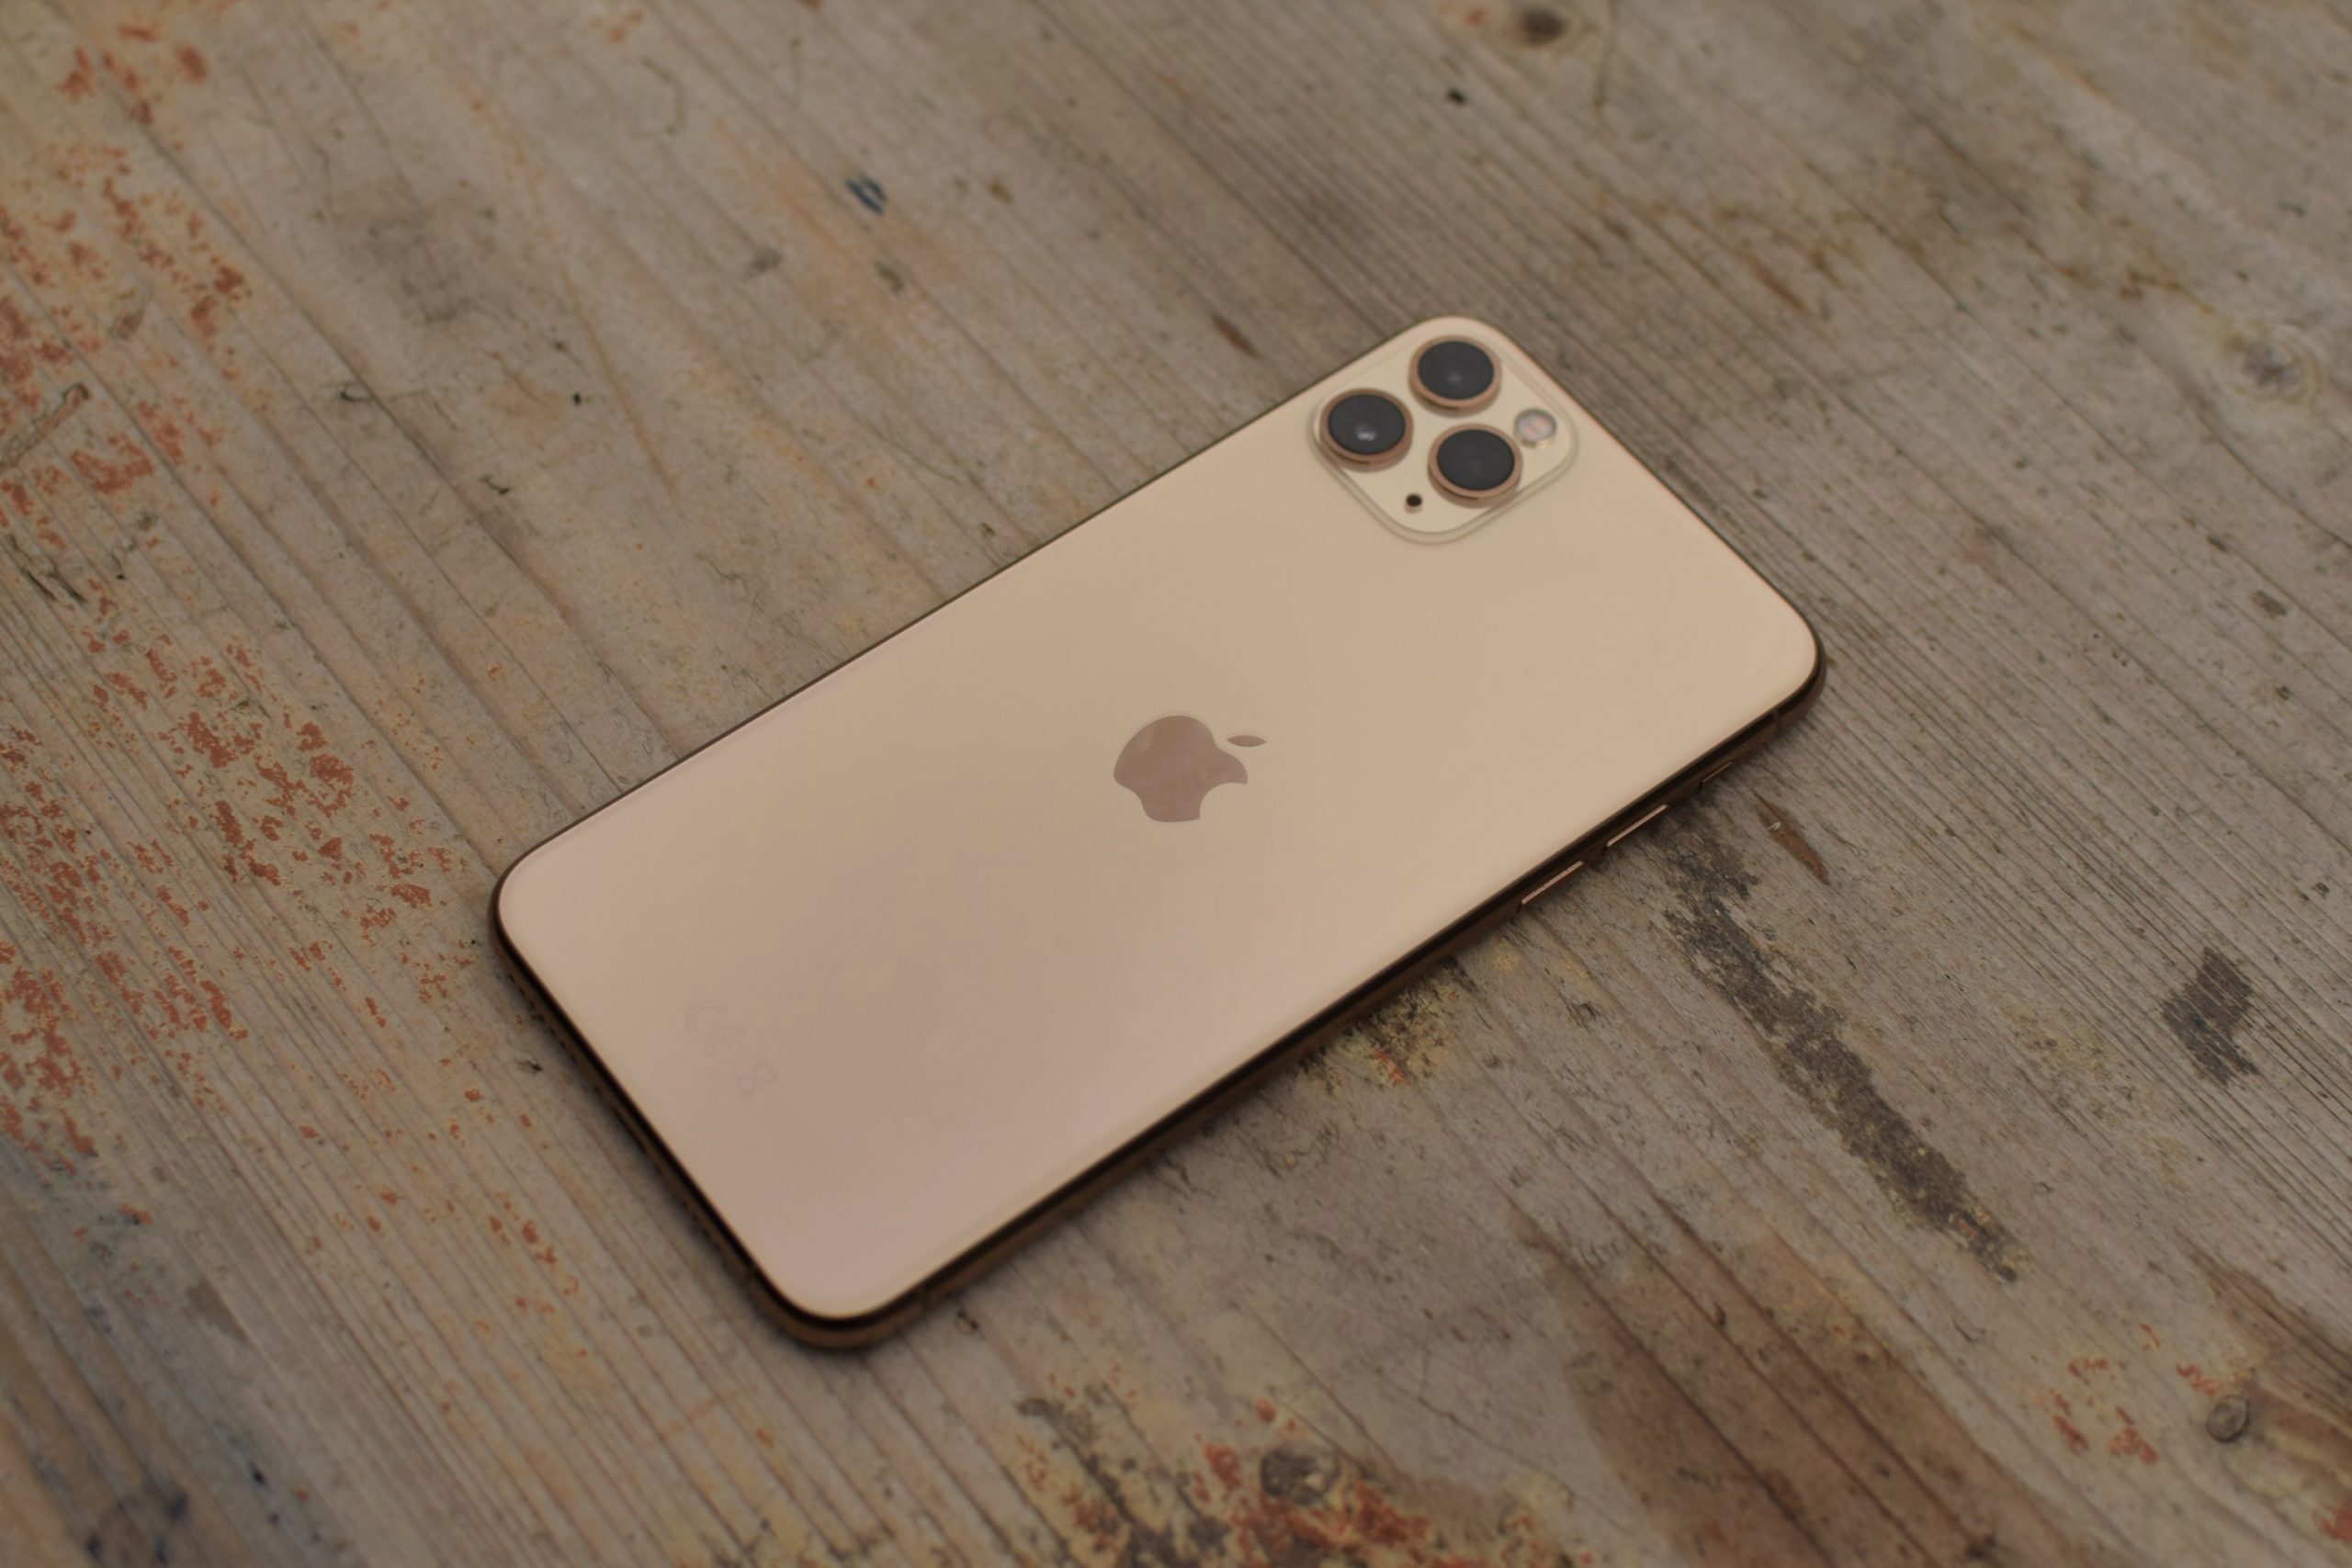 Đánh giá iPhone 11 Pro Max: Tính năng nổi bật, hiệu năng mạnh mẽ và thiết kế đẳng cấp